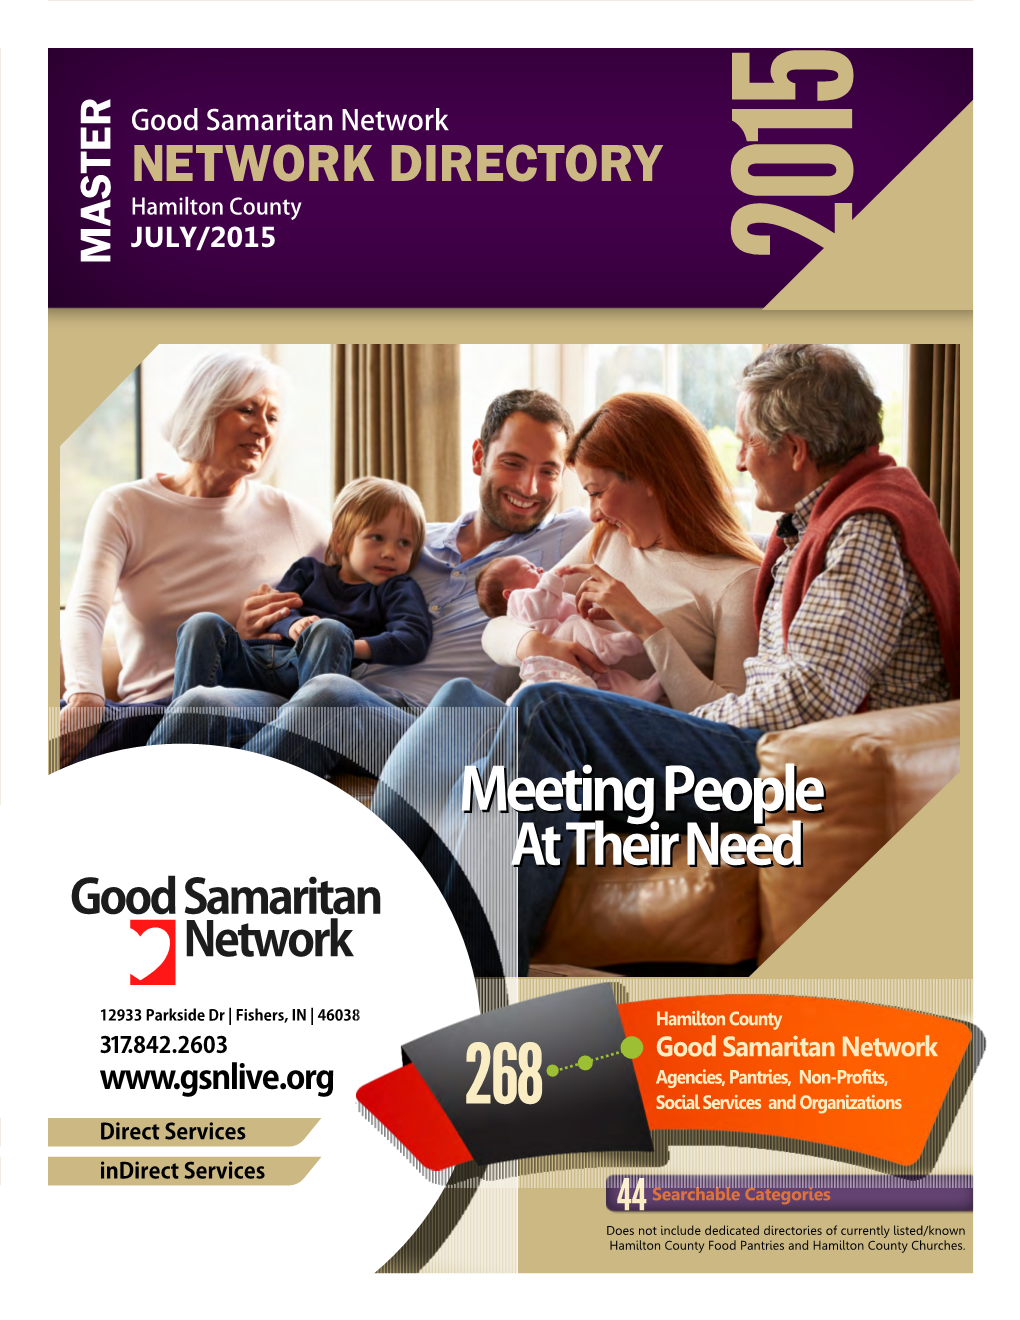 Good Samaritan Network Overview